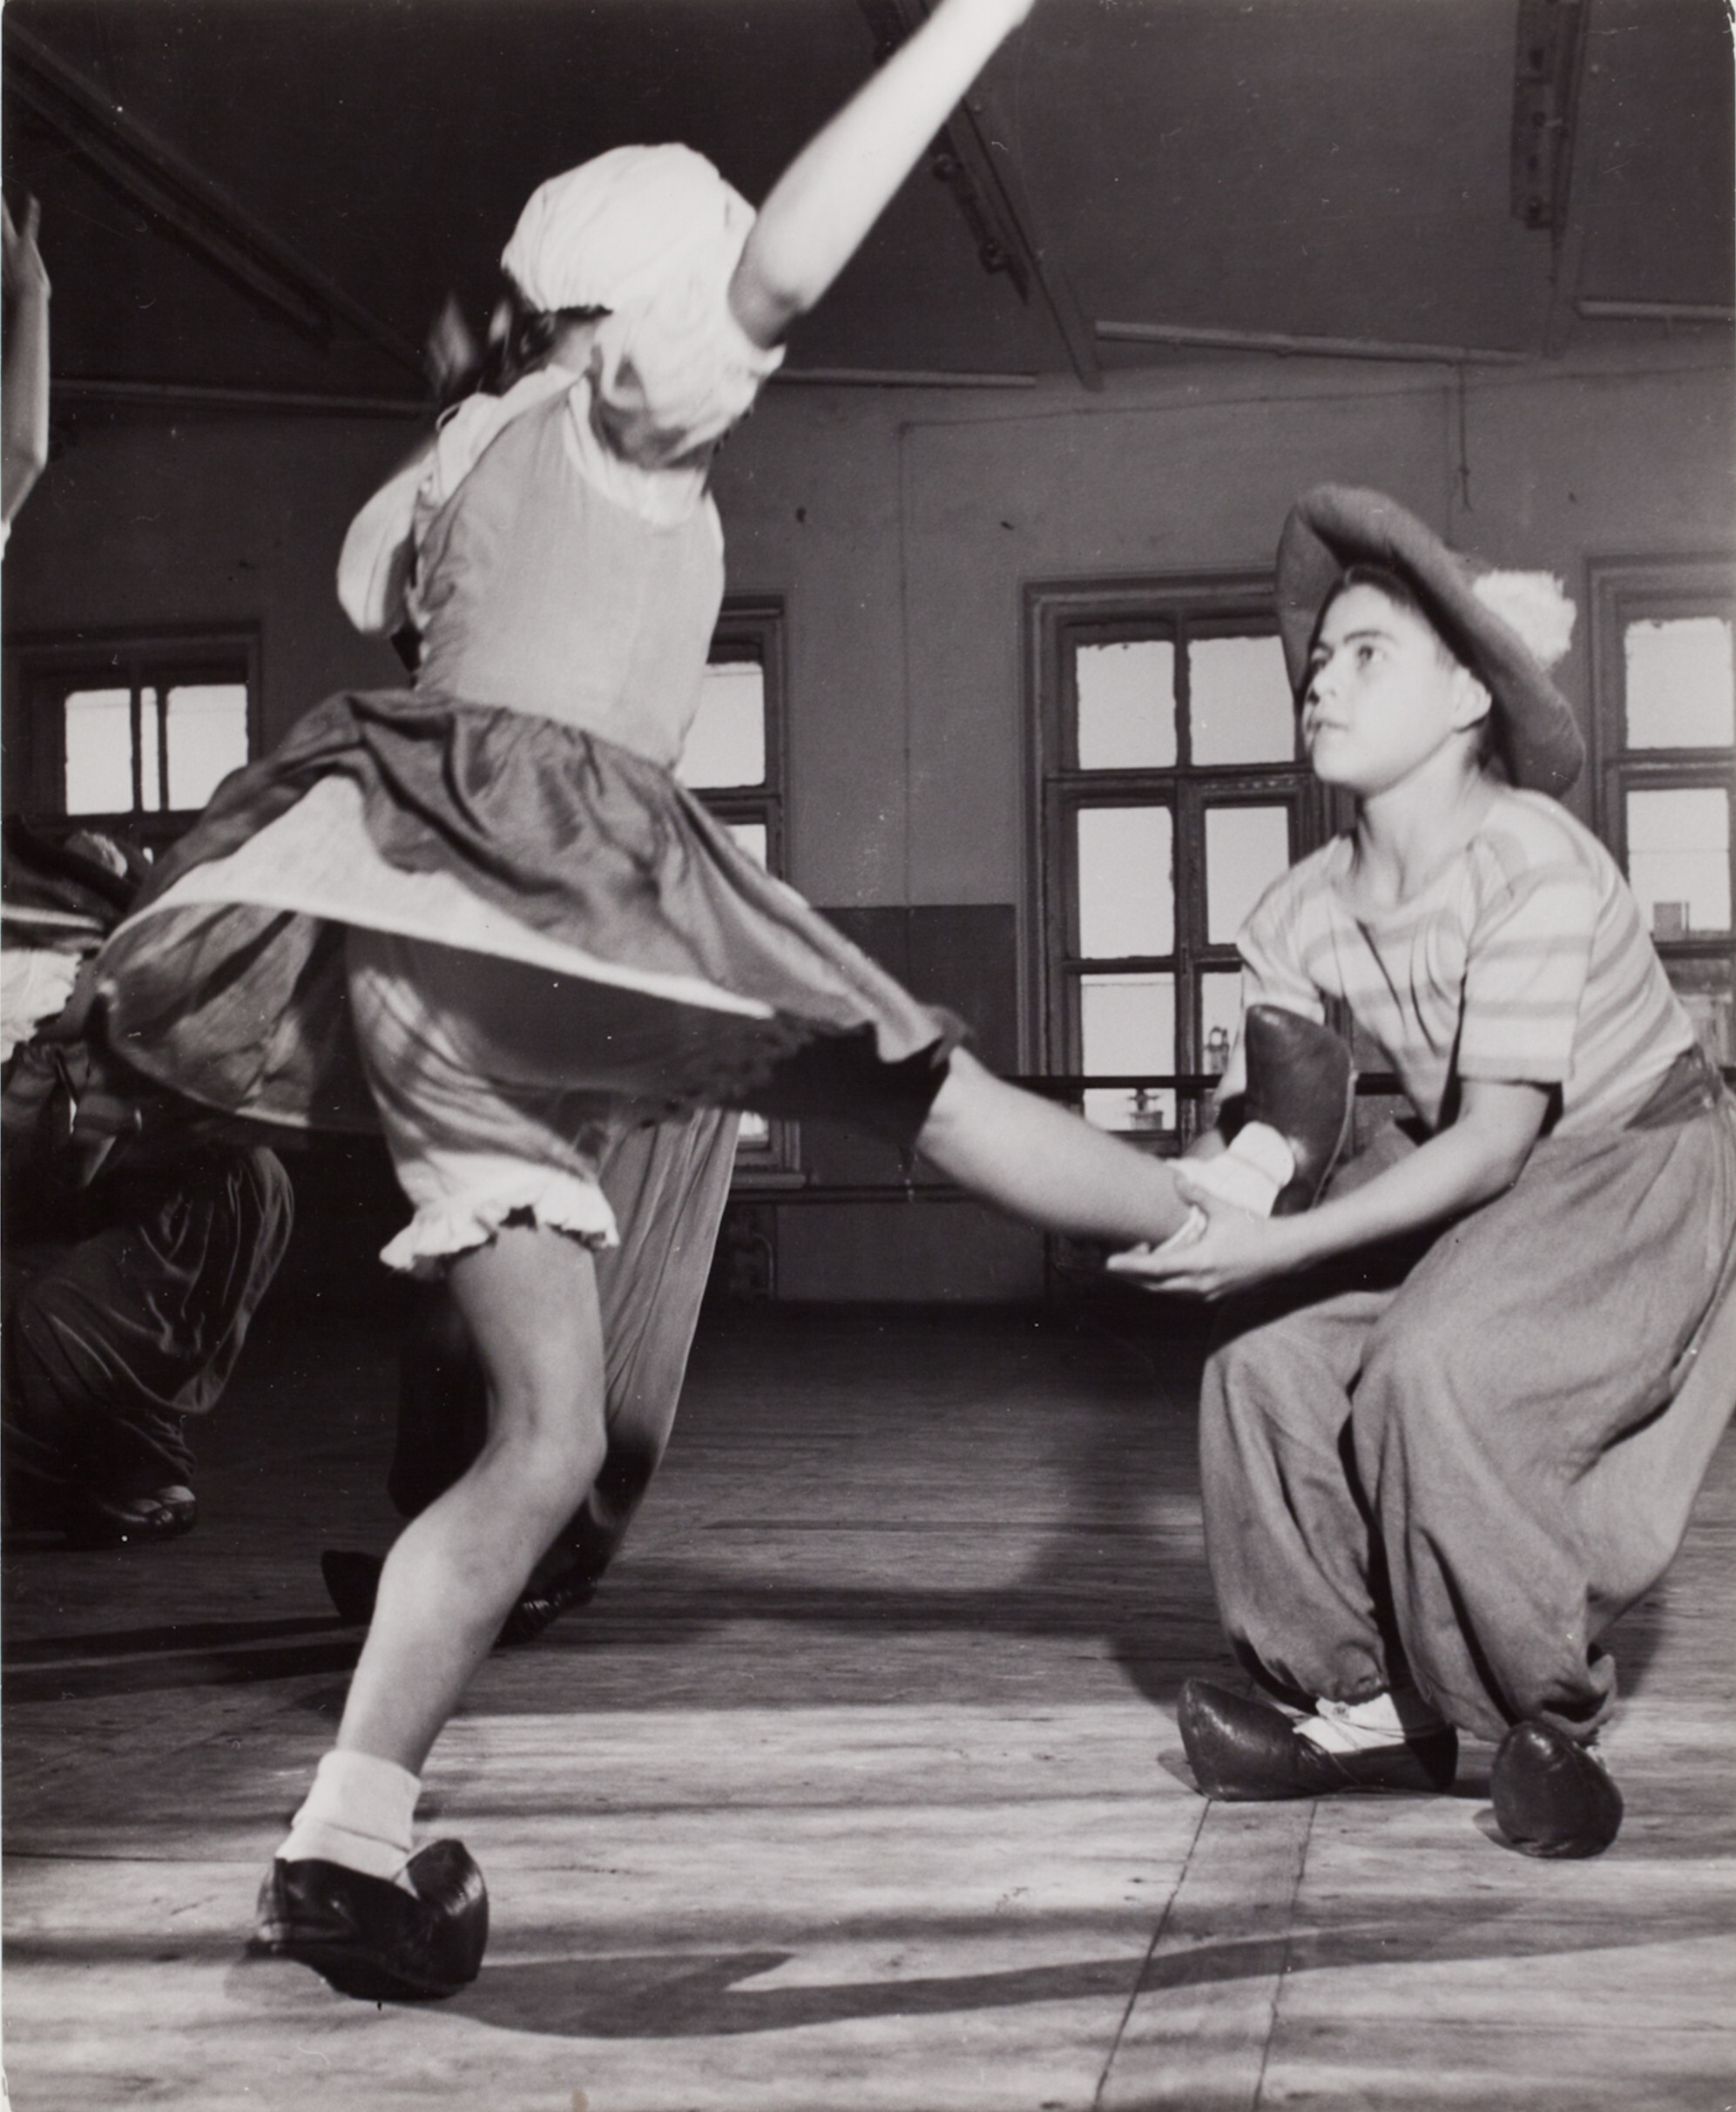 Мальчик и девочка исполняют танец, Москва, 1947 год. Фотограф Роберт Капа